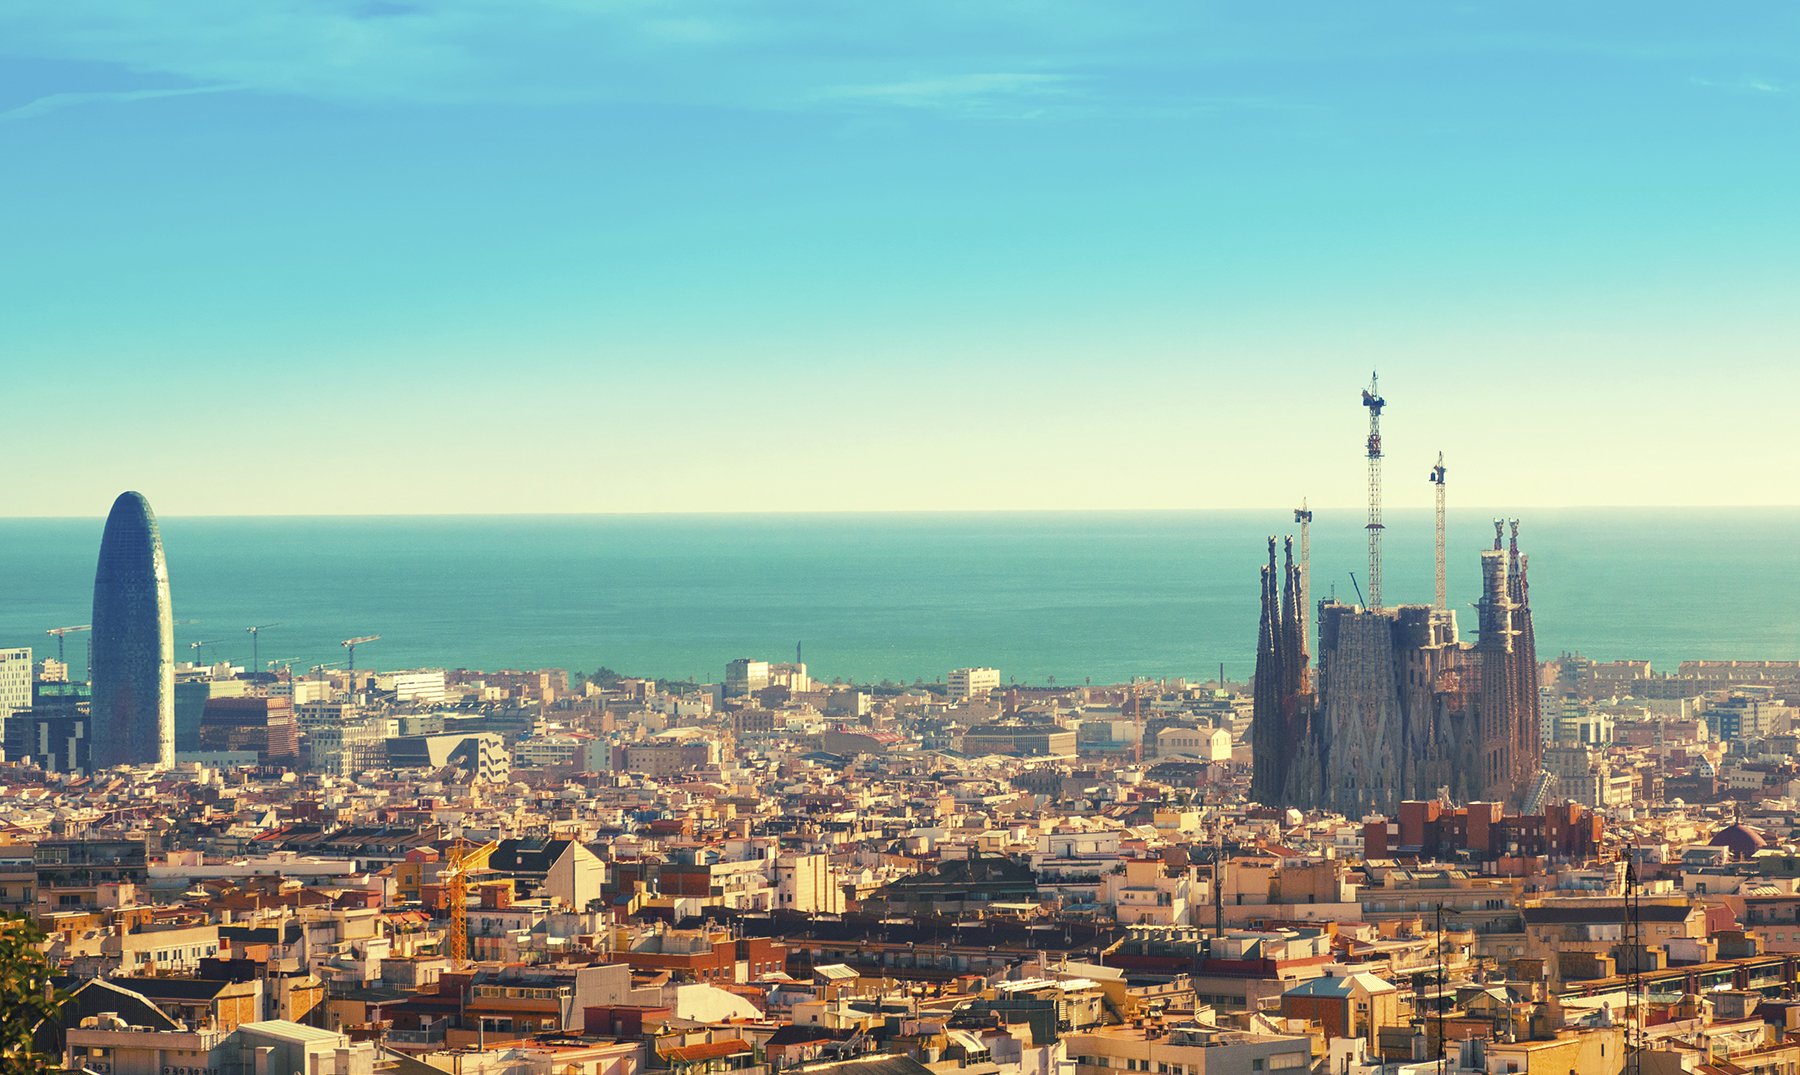 El mejor restaurante de Barcelona según TripAdvisor arrasa en comentarios positivos: “Increíble”